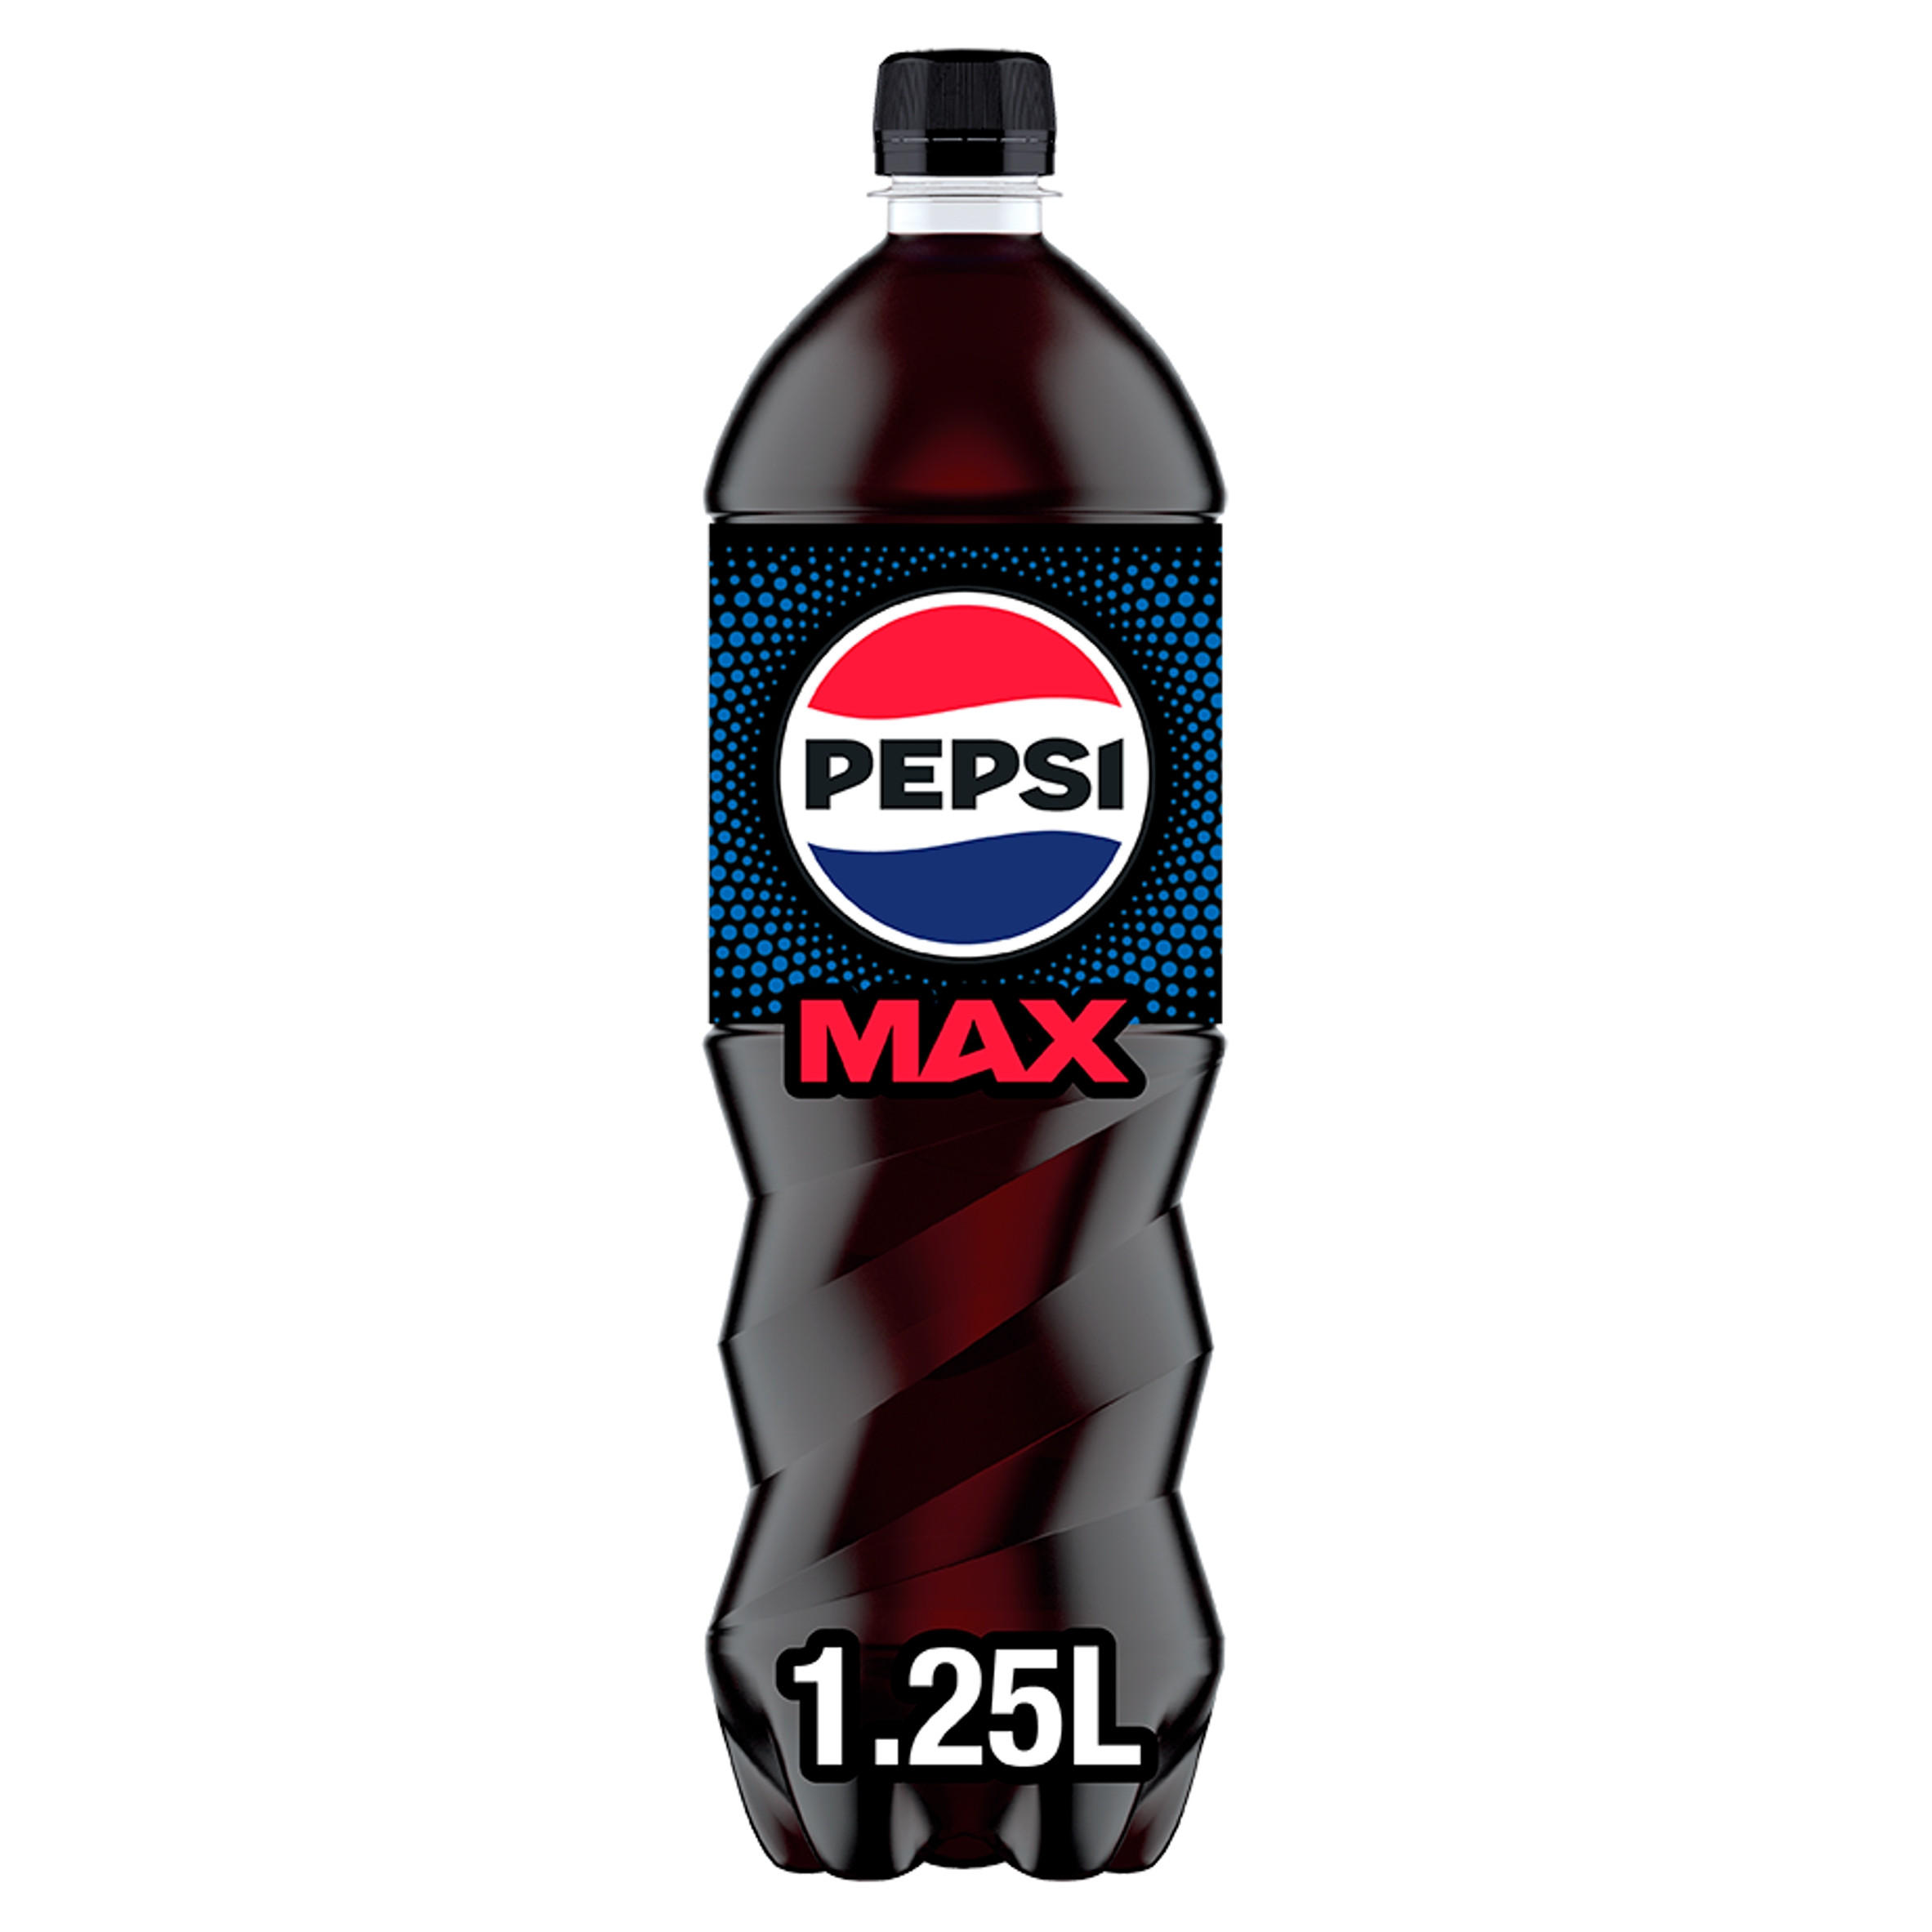 Fruit-Forward Zero-Sugar Sodas : Pepsi Max Mango